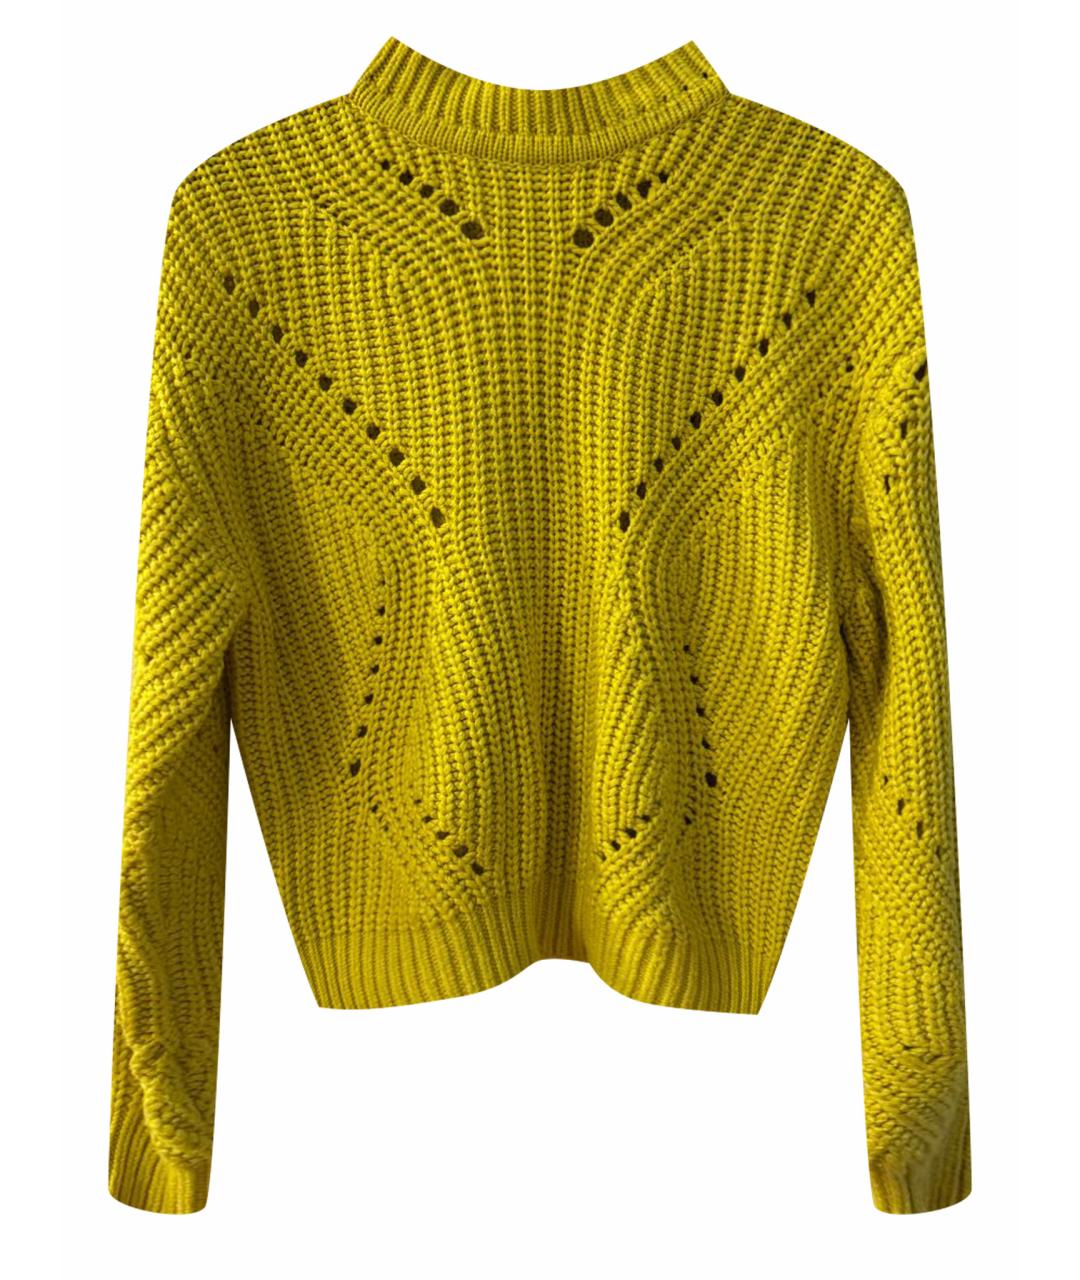 ARMANI EXCHANGE Желтый джемпер / свитер, фото 1